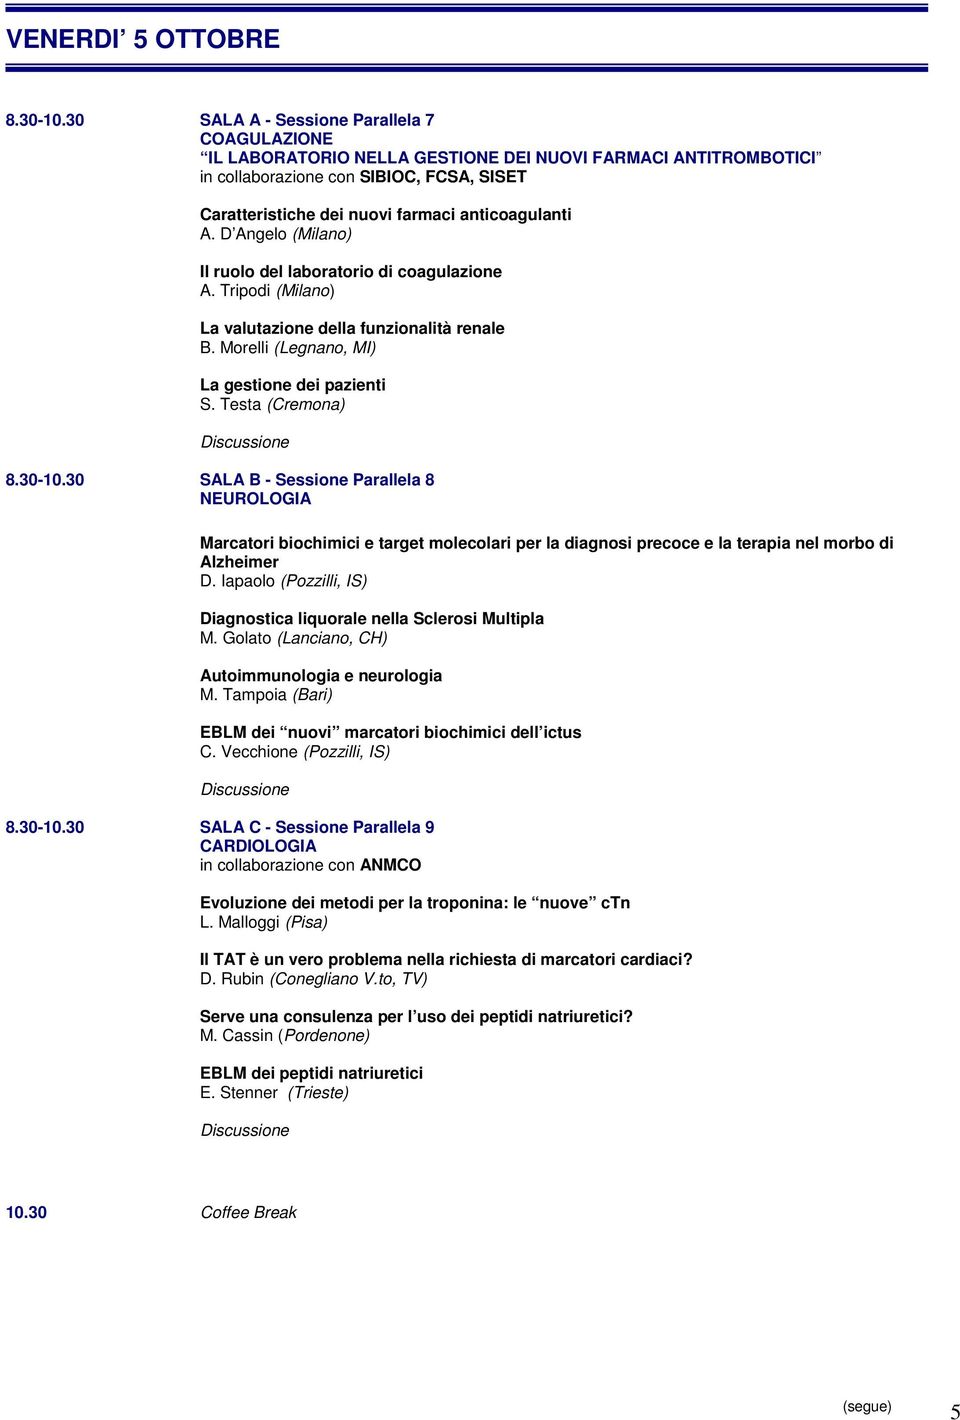 A. D Angelo (Milano) Il ruolo del laboratorio di coagulazione A. Tripodi (Milano) La valutazione della funzionalità renale B. Morelli (Legnano, MI) La gestione dei pazienti S. Testa (Cremona) 8.30-10.